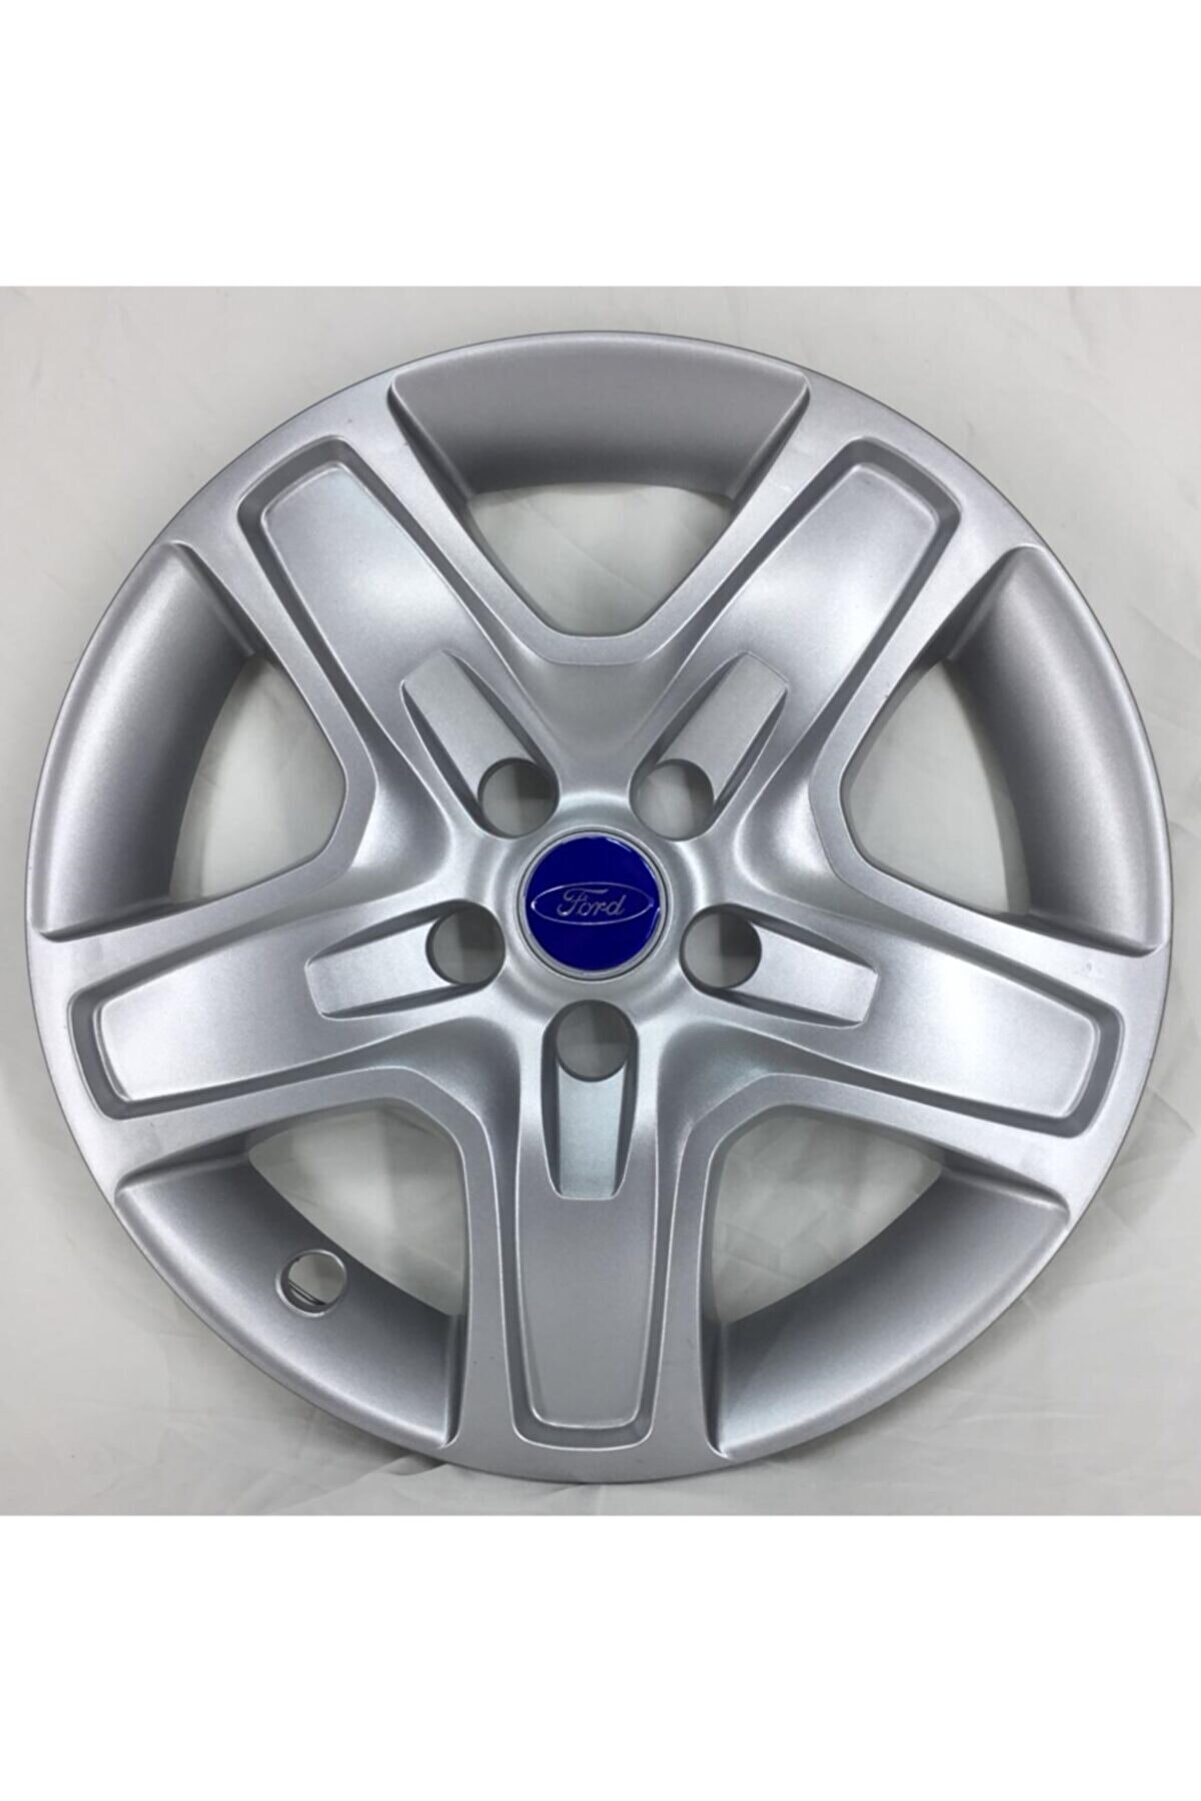 Ford Focus 16 Inç Jant Kapağı 4 Adet Gönderilir & Kırılmaz